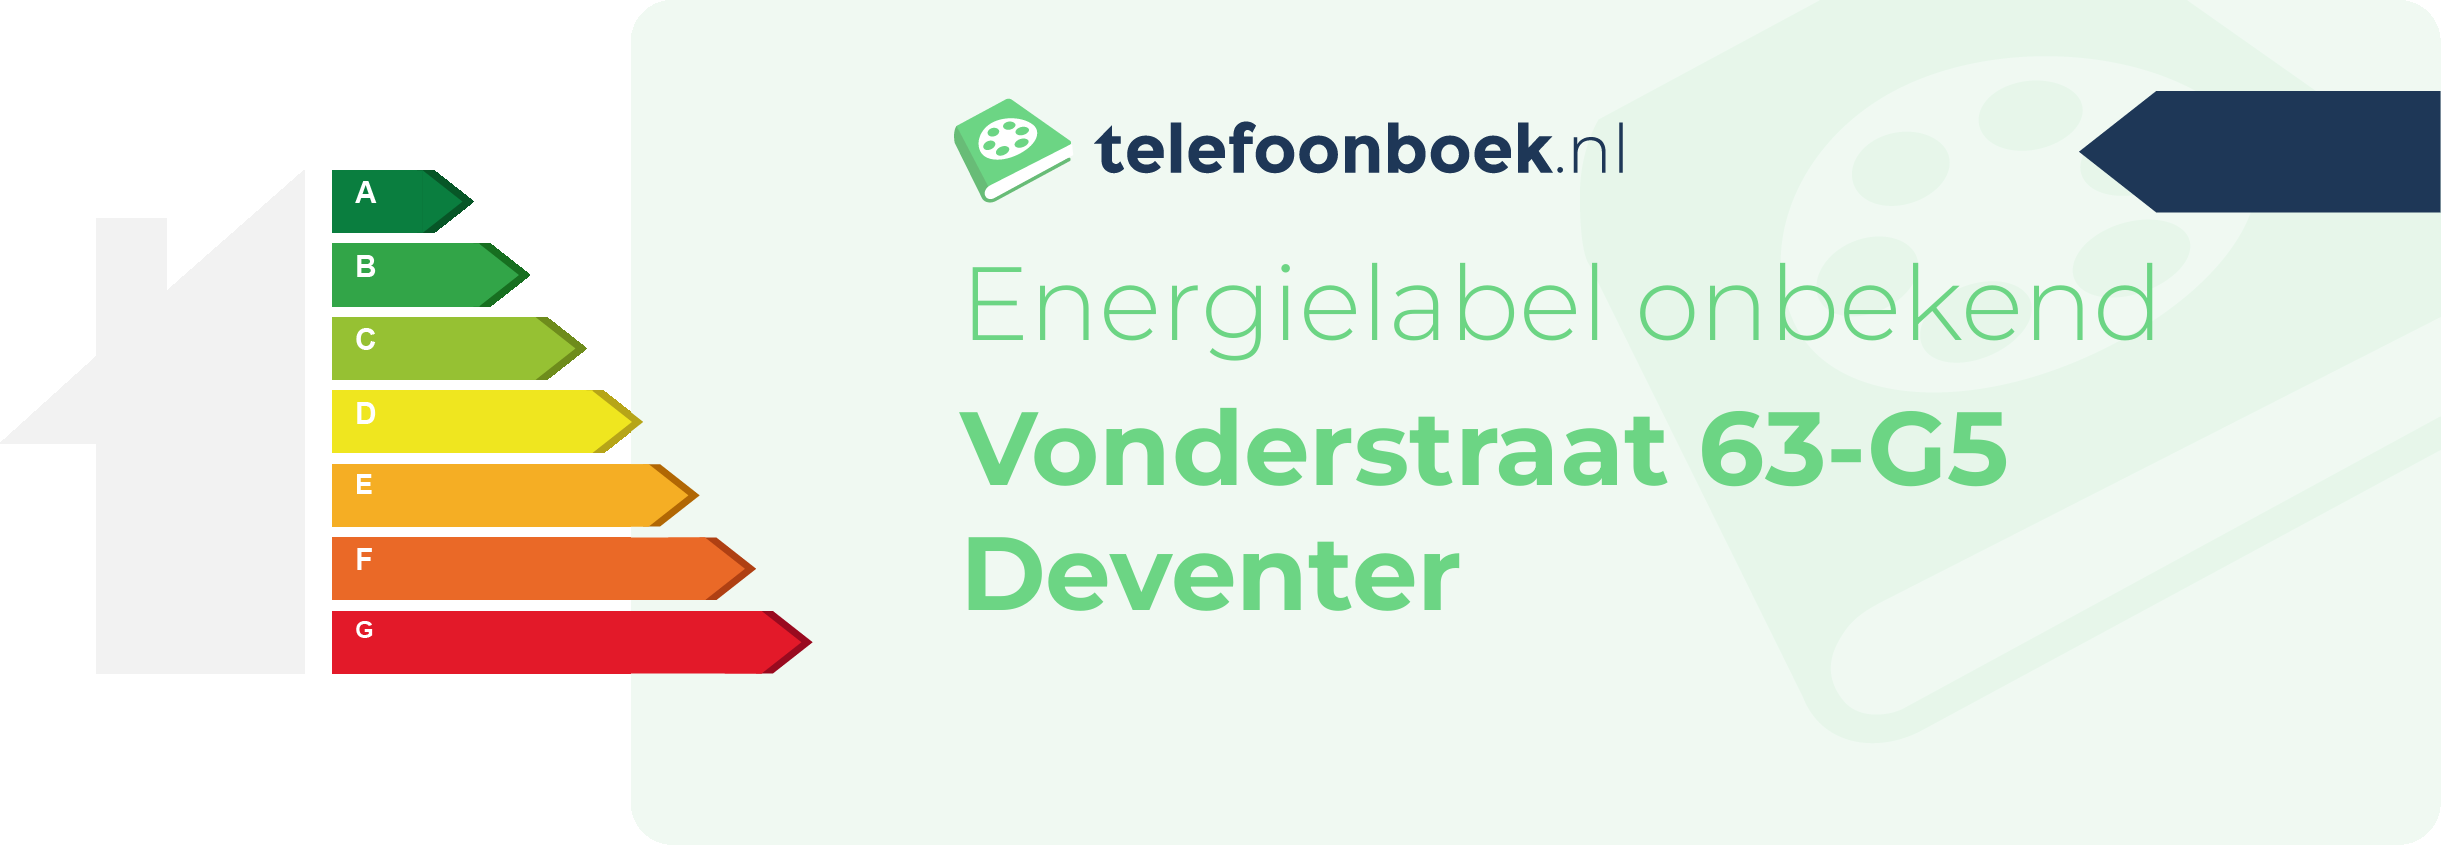 Energielabel Vonderstraat 63-G5 Deventer